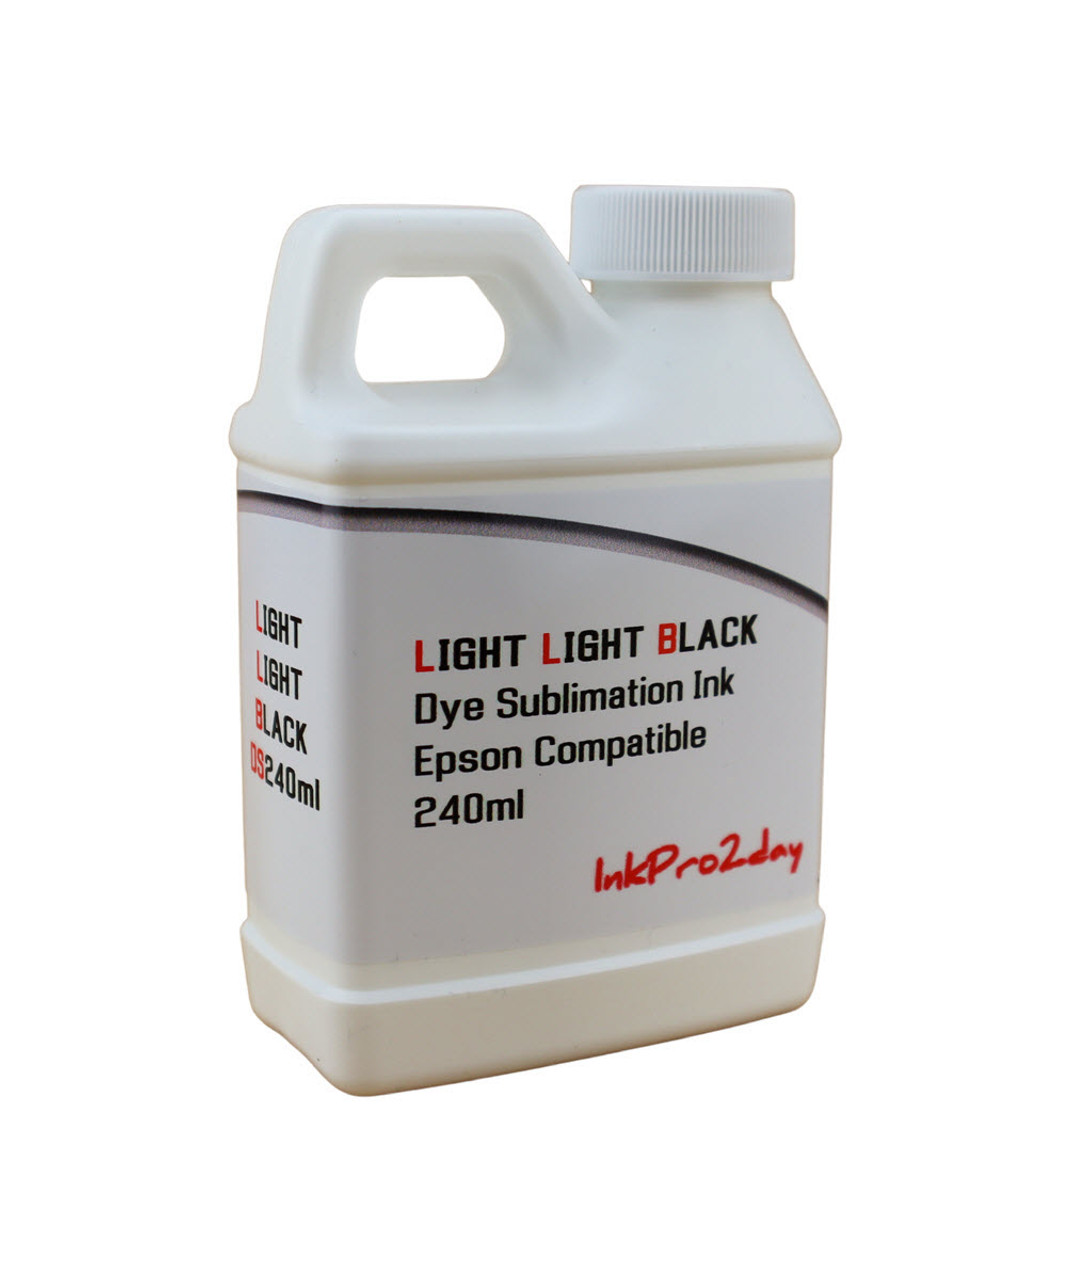 Light Light Black 240ml Bottle Dye Sublimation Ink for Epson Stylus Pro 4800 printers